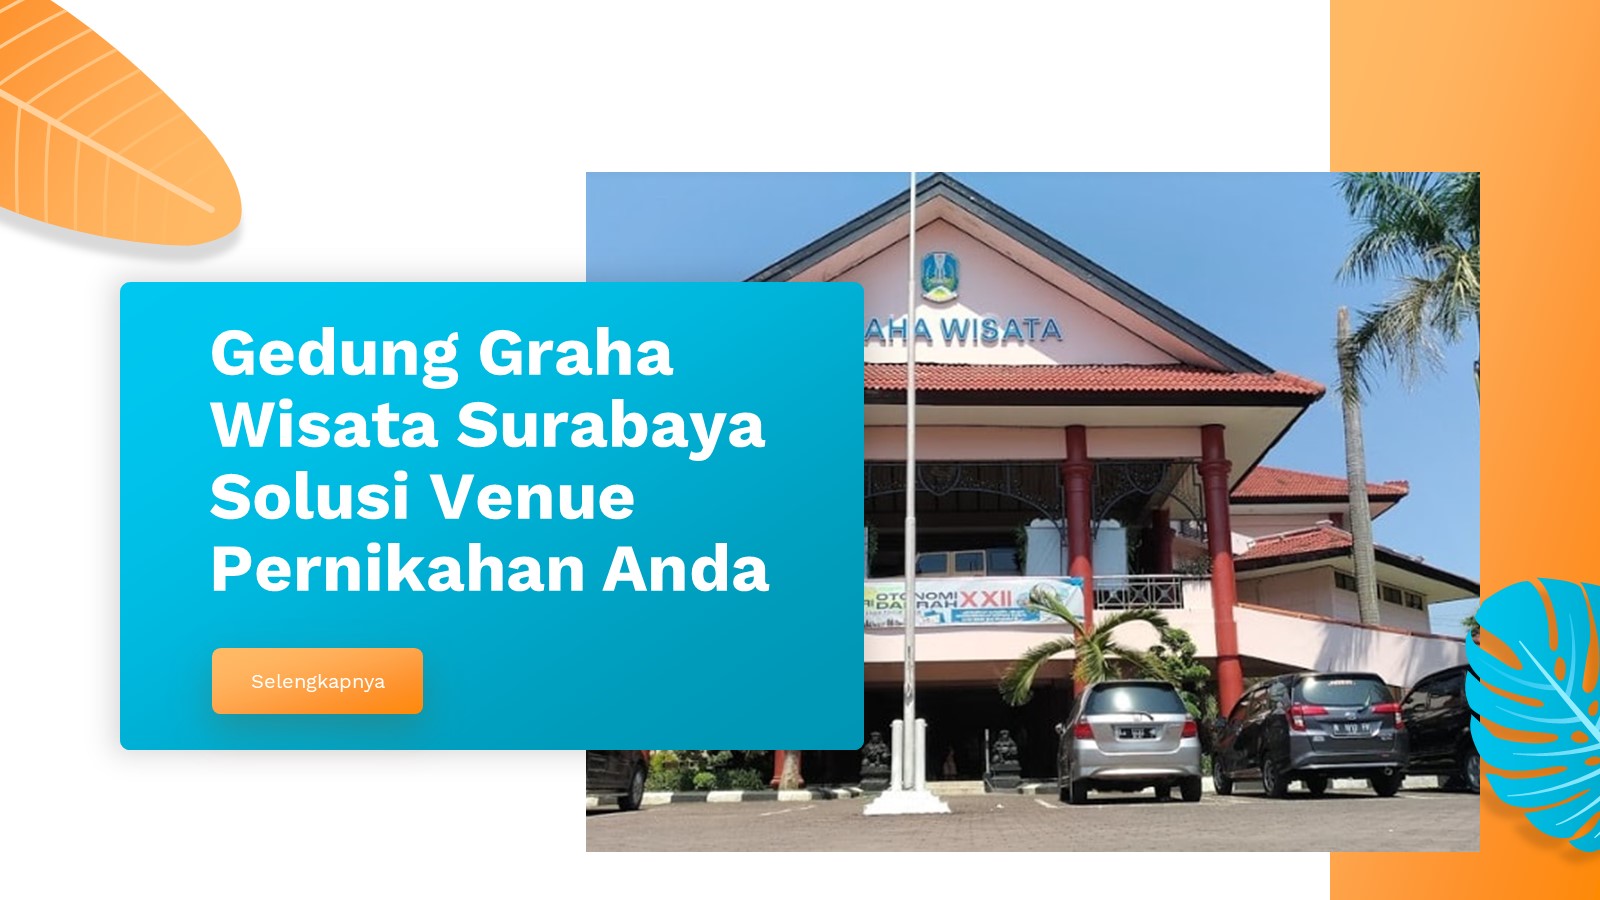 Gedung Graha Wisata Surabaya Solusi Venue Pernikahan Anda